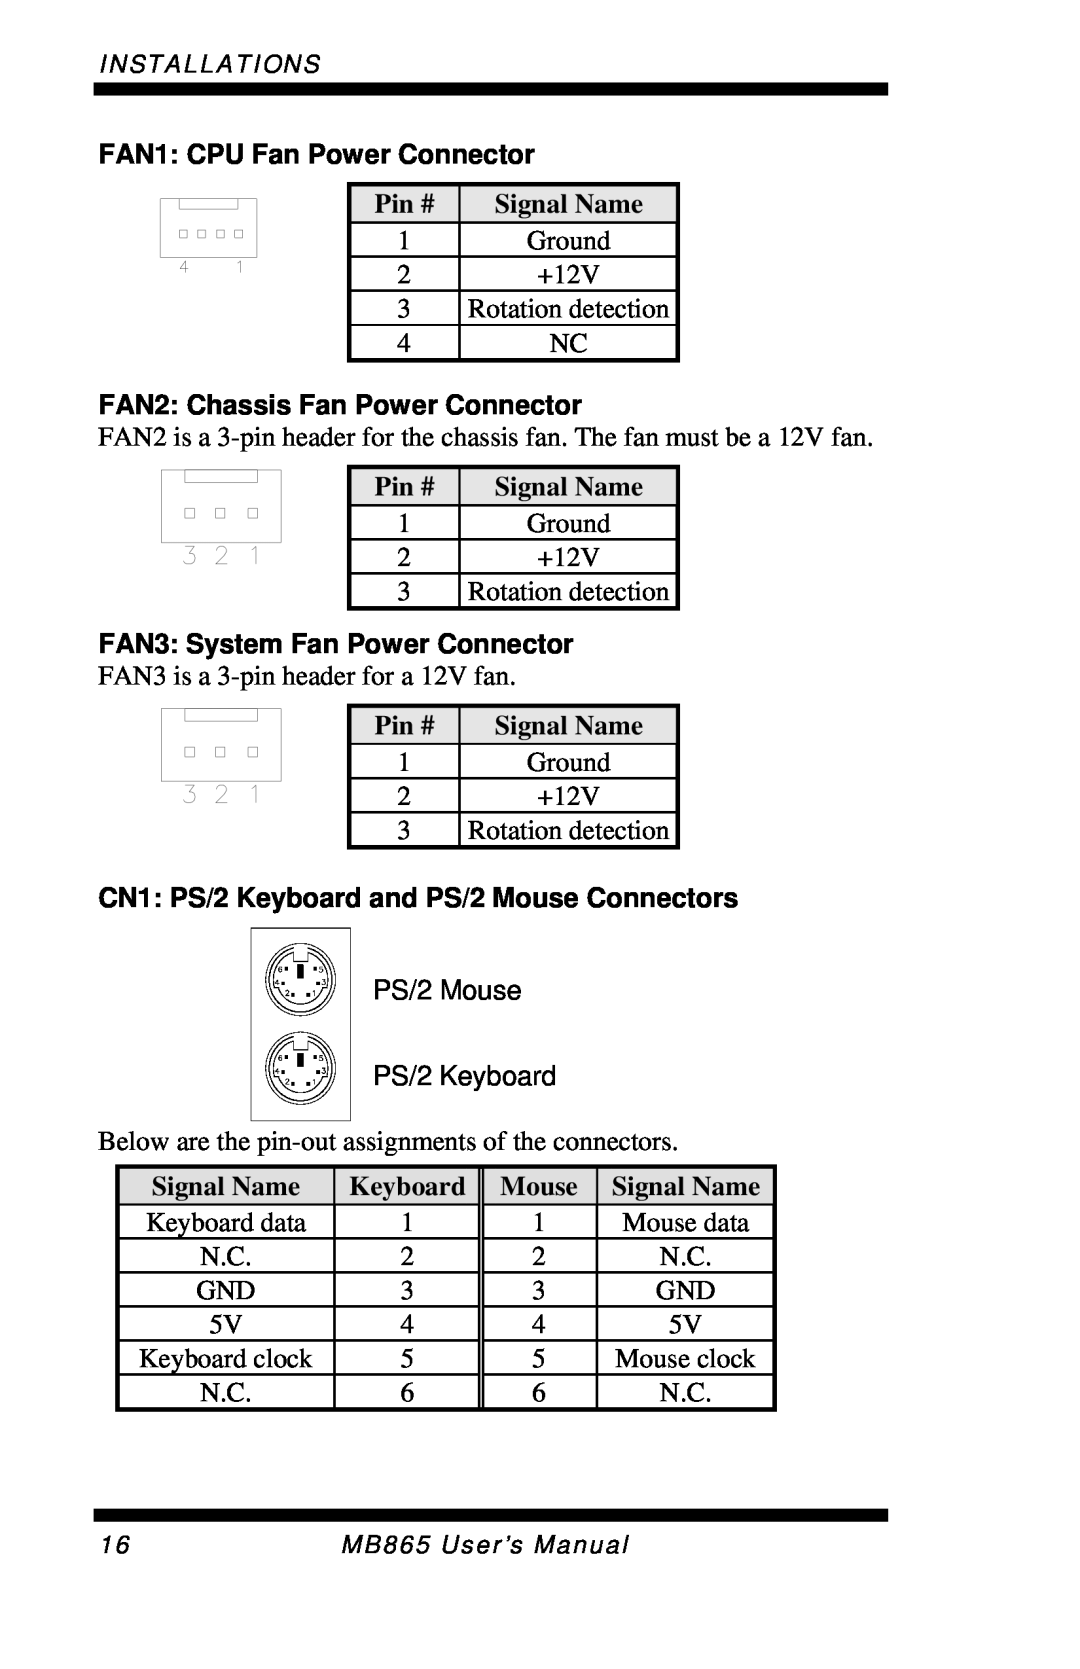 Intel MB865 FAN1 CPU Fan Power Connector, FAN2 Chassis Fan Power Connector, FAN3 System Fan Power Connector, Keyboard 